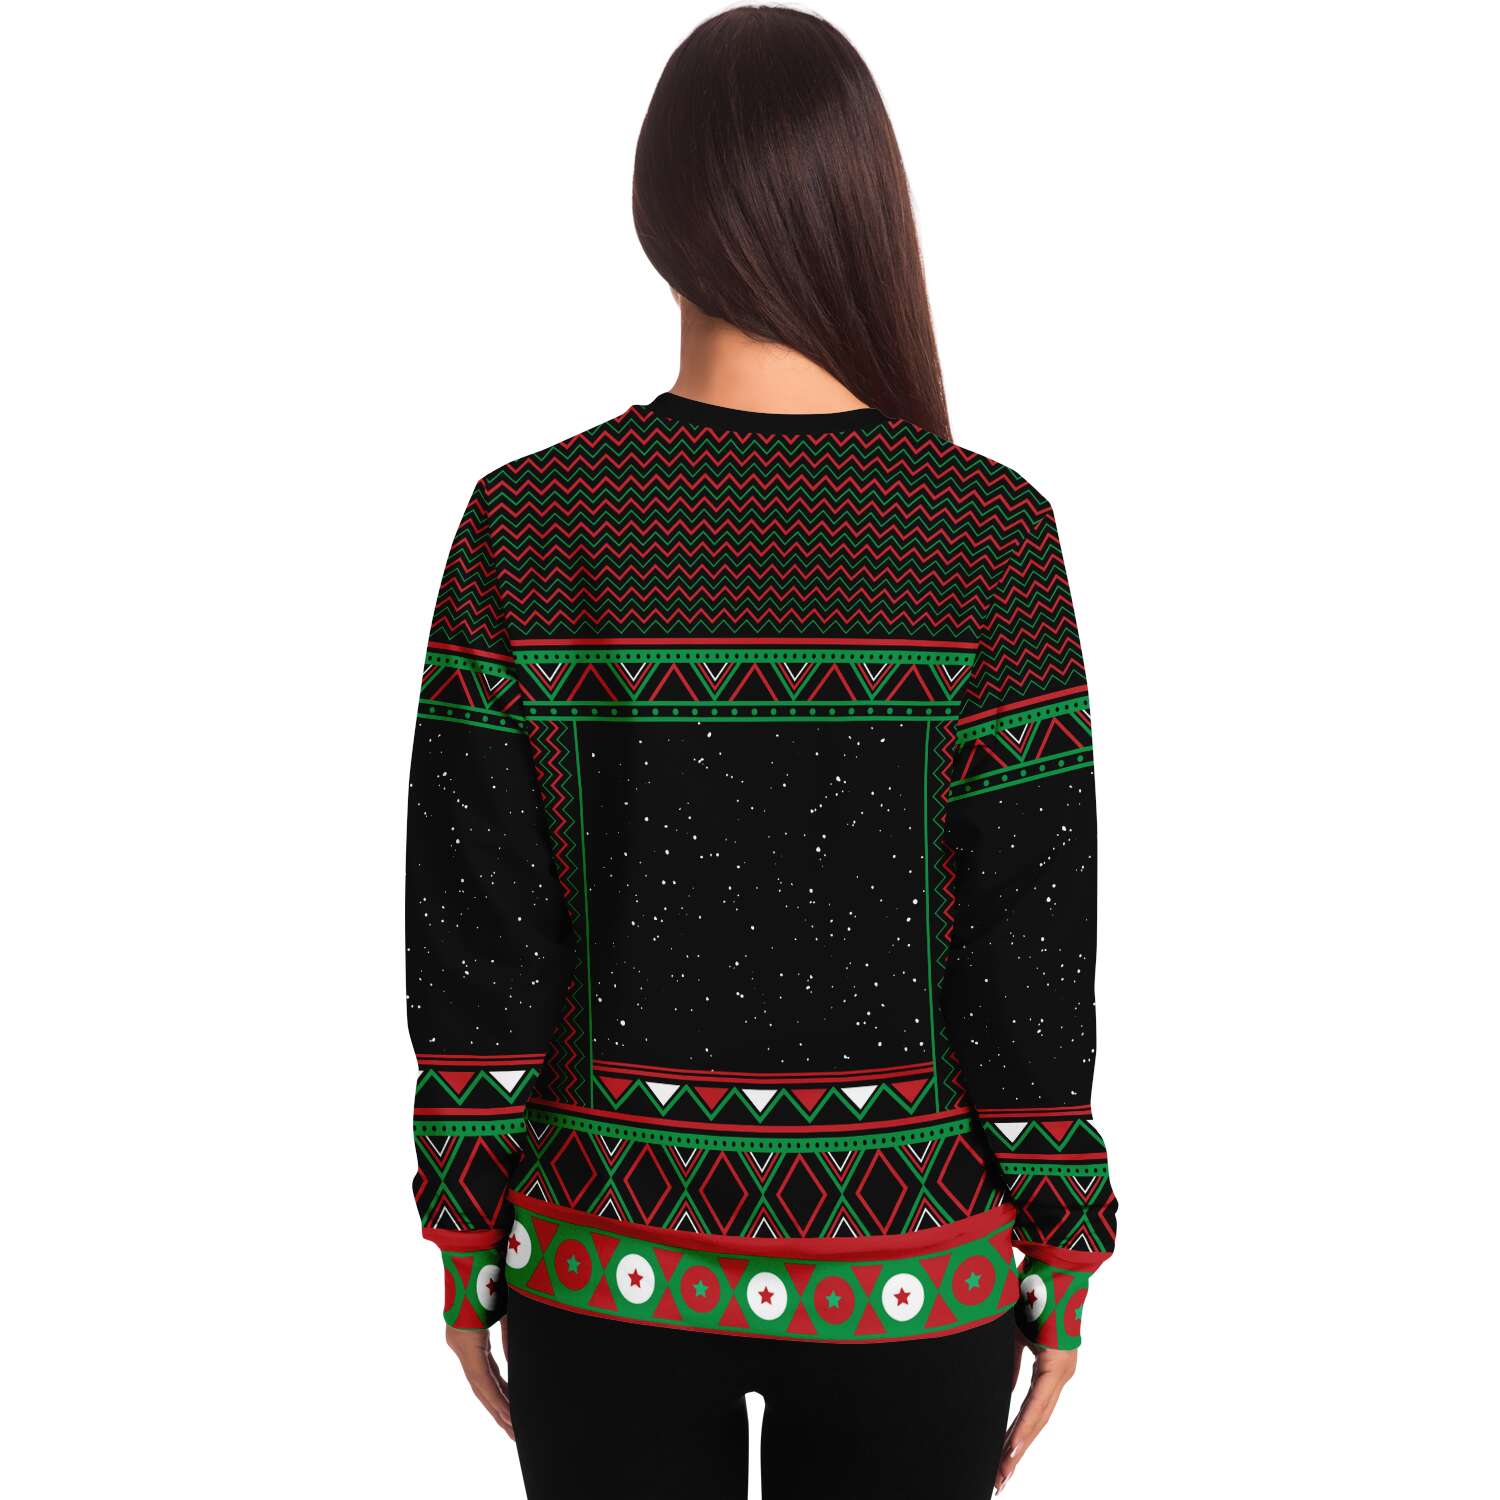 Pretty Sketchy Sweatshirt | Unisex Ugly Christmas Sweater, Xmas Sweater, Holiday Sweater, Festive Sweater, Funny Sweater, Funny Party Shirt